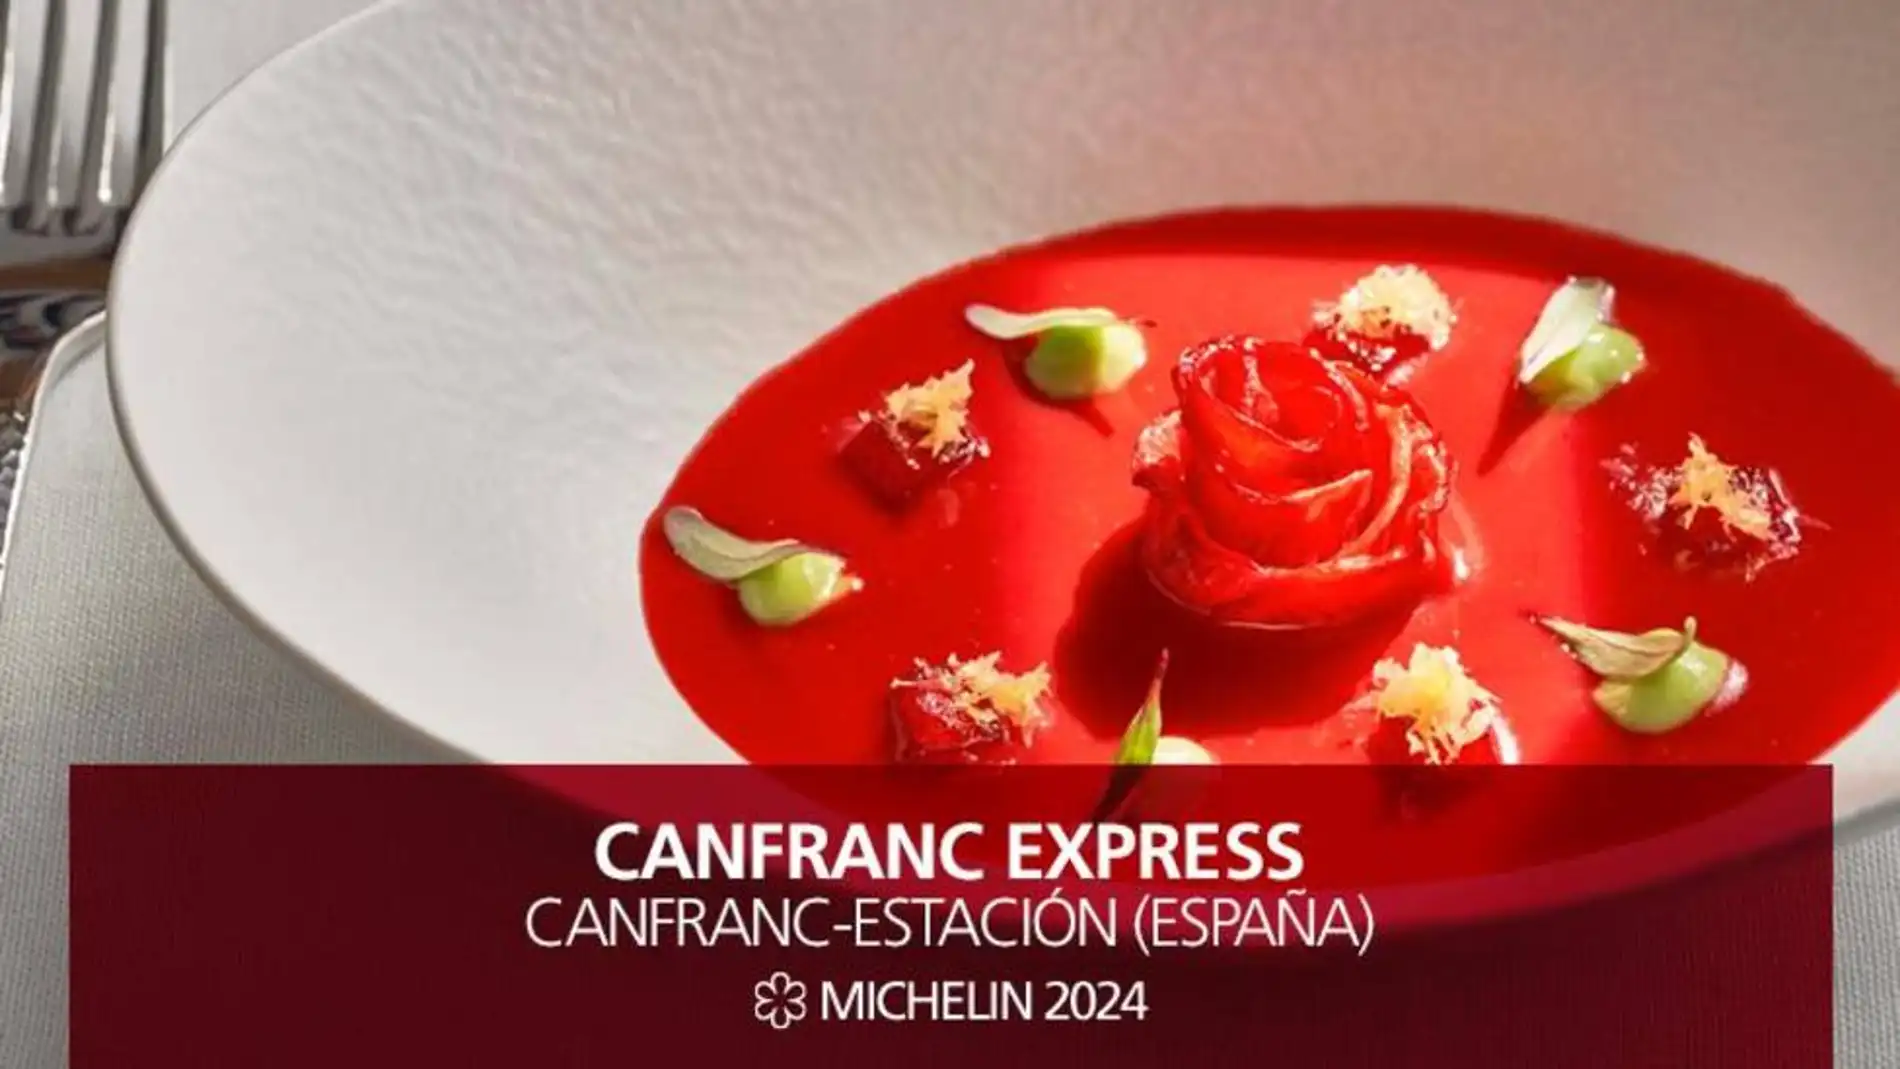 Canfranc Express Estrella Michelín 2024